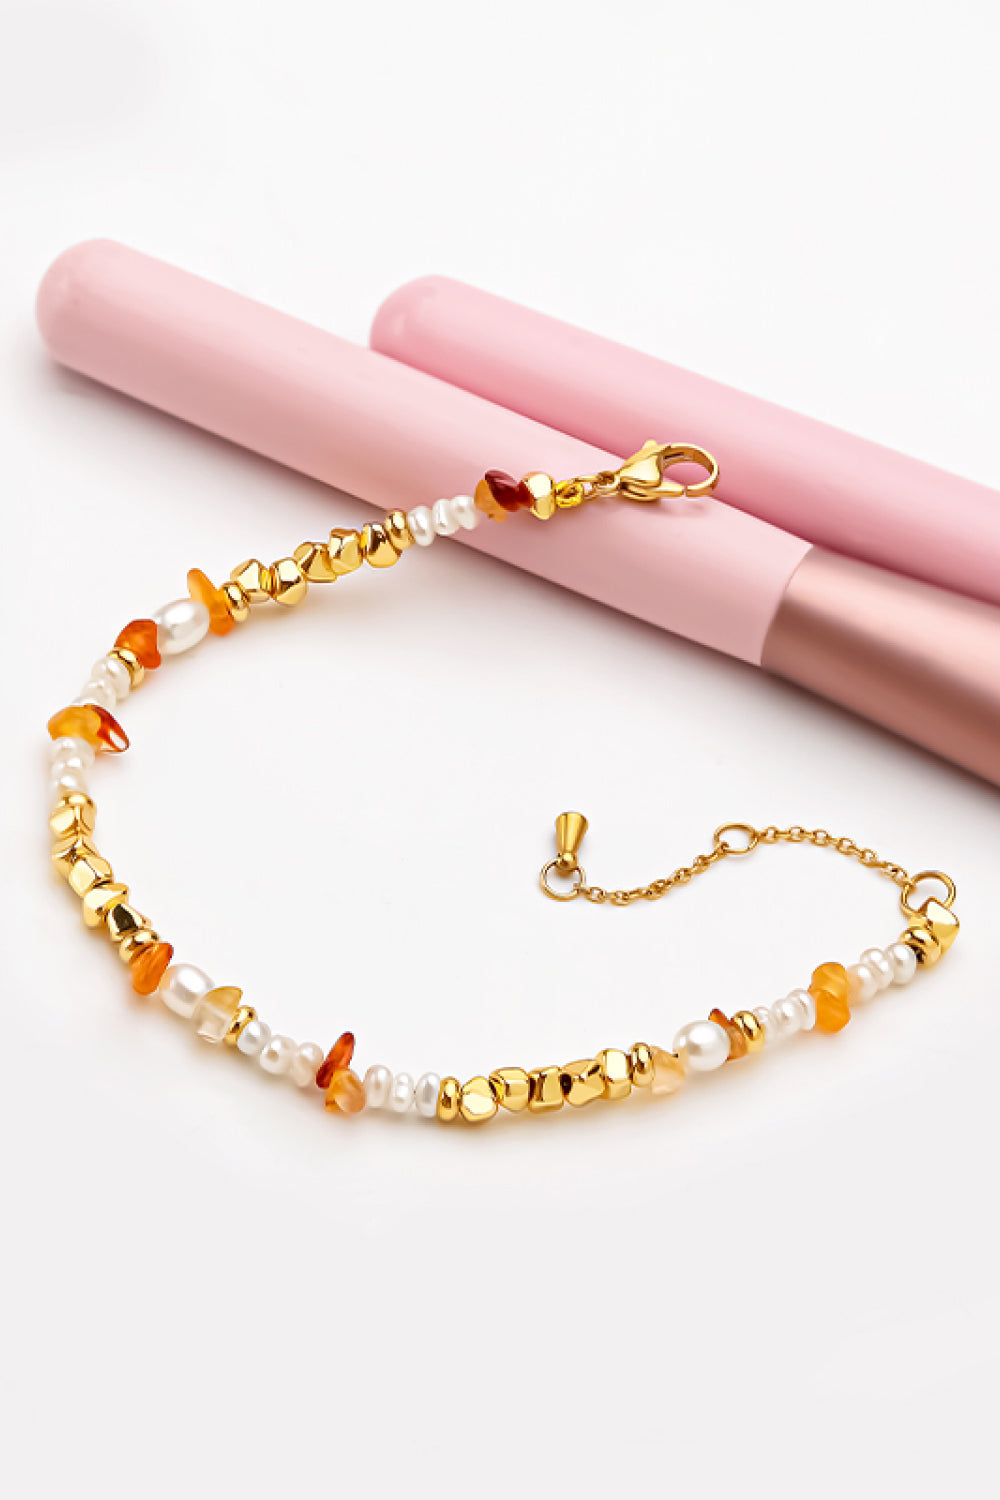 Freshwater Pearl Zinc Alloy Bracelet - Gold / One Size - Women’s Jewelry - Bracelets - 3 - 2024